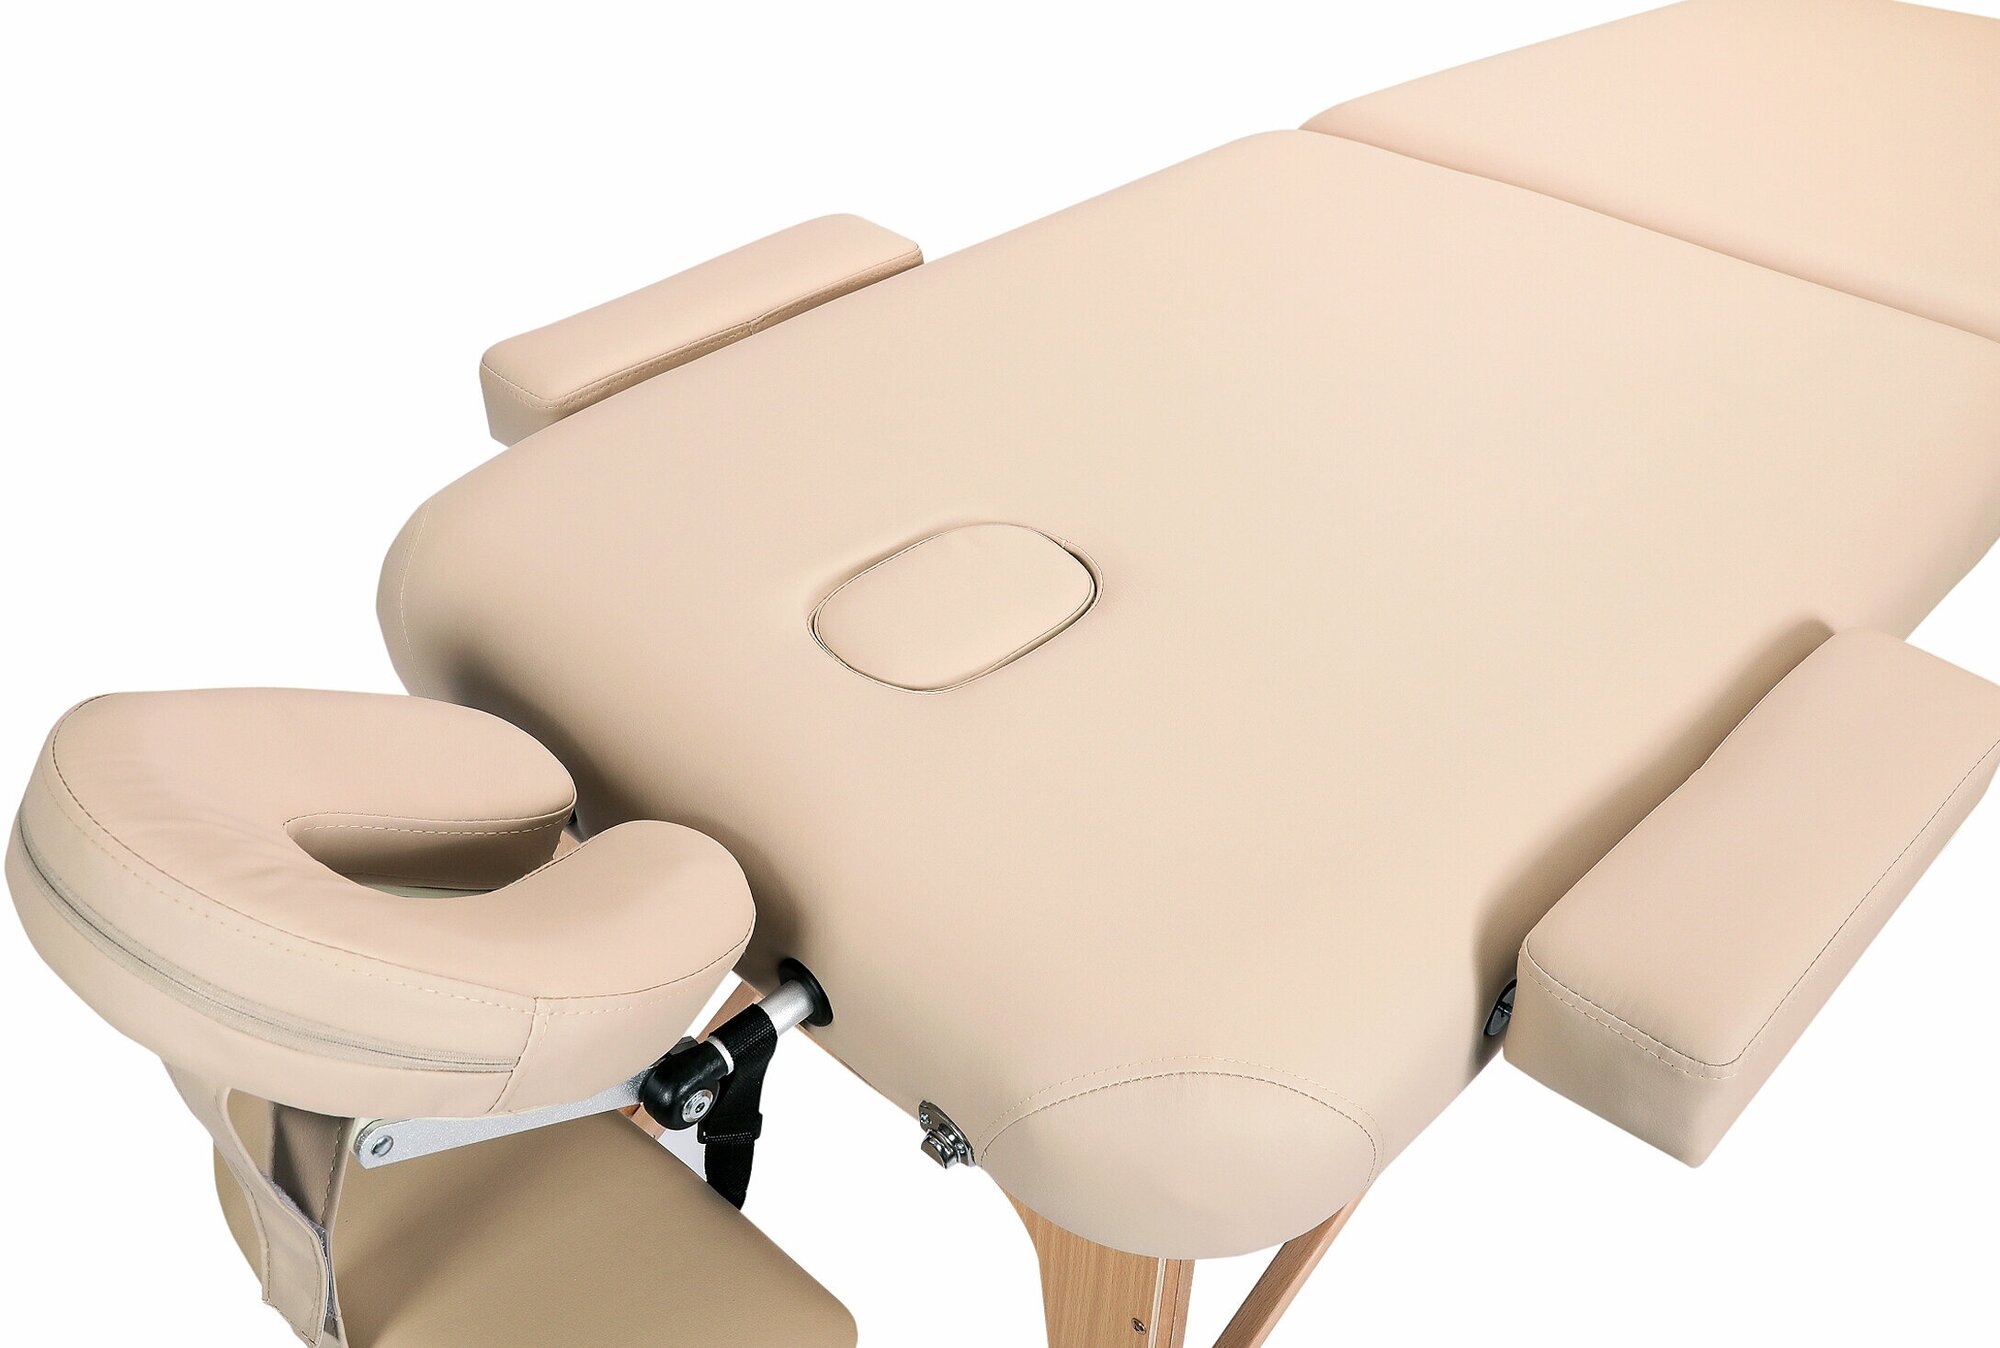 Массажный складной стол модульный Premium 2, на буковых ножках, регулировка от 67 до 86см, для массажа, с сумкой, бежевый